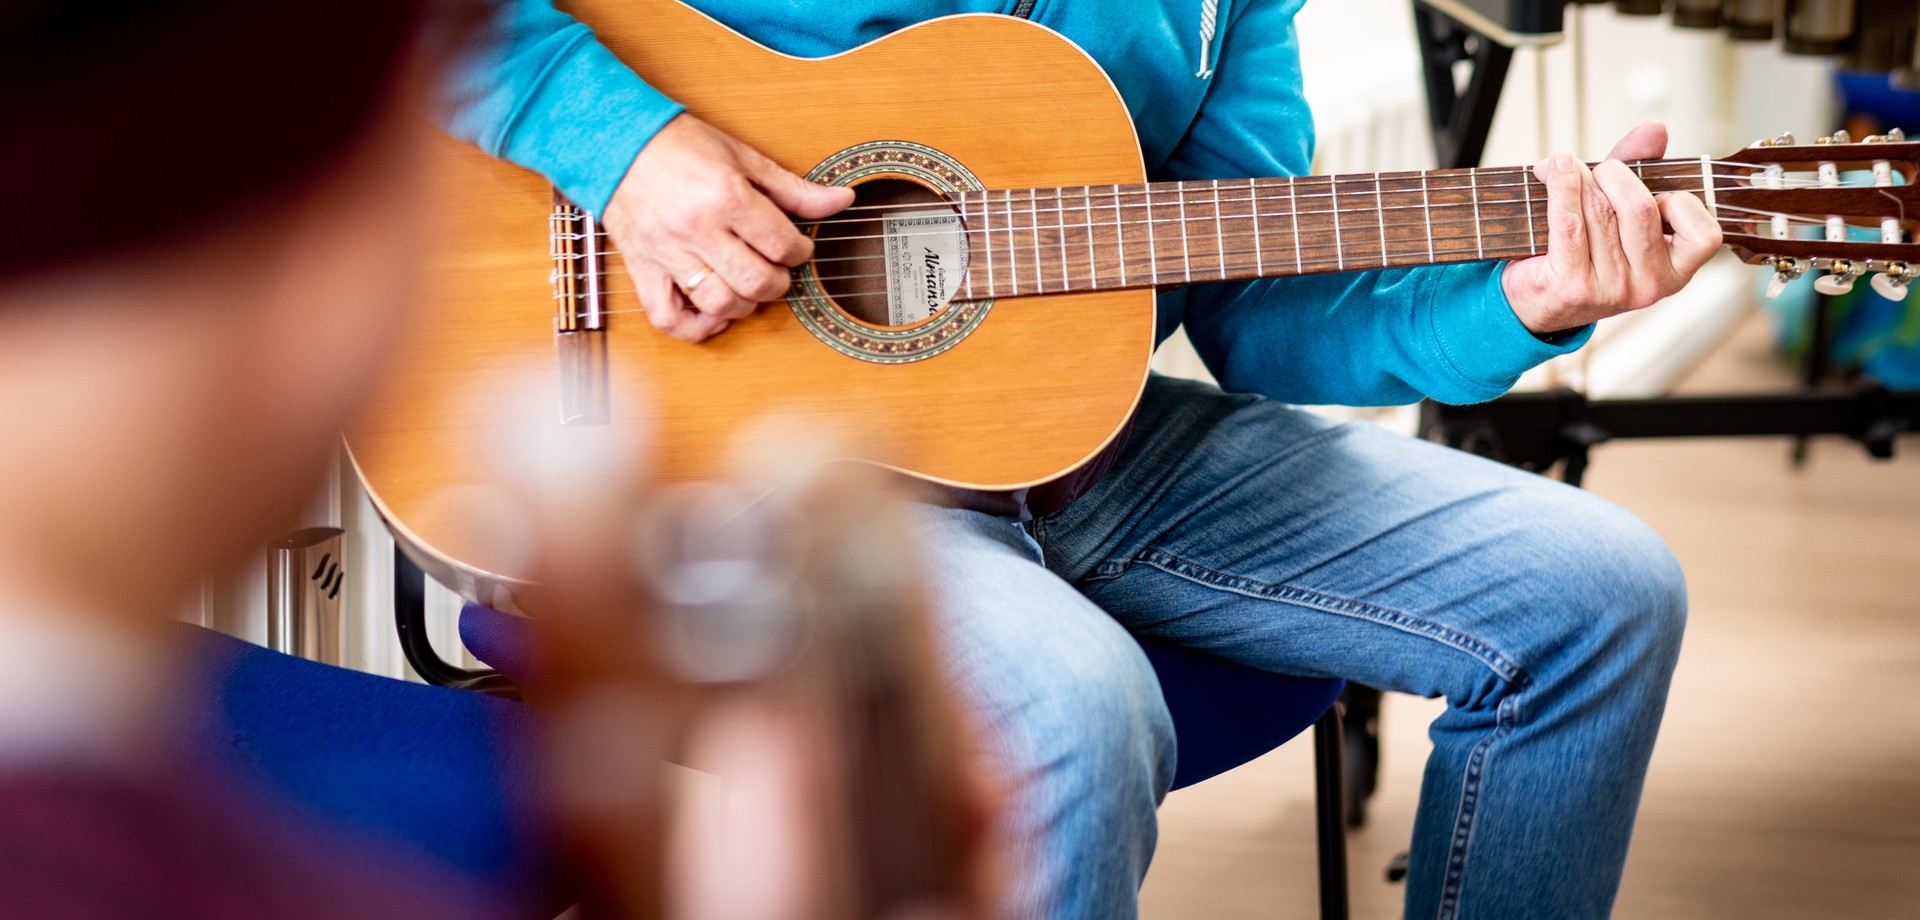 Ein Mann in einem türkisfarbenen Pulli und Jeans spielt auf einer Gitarre